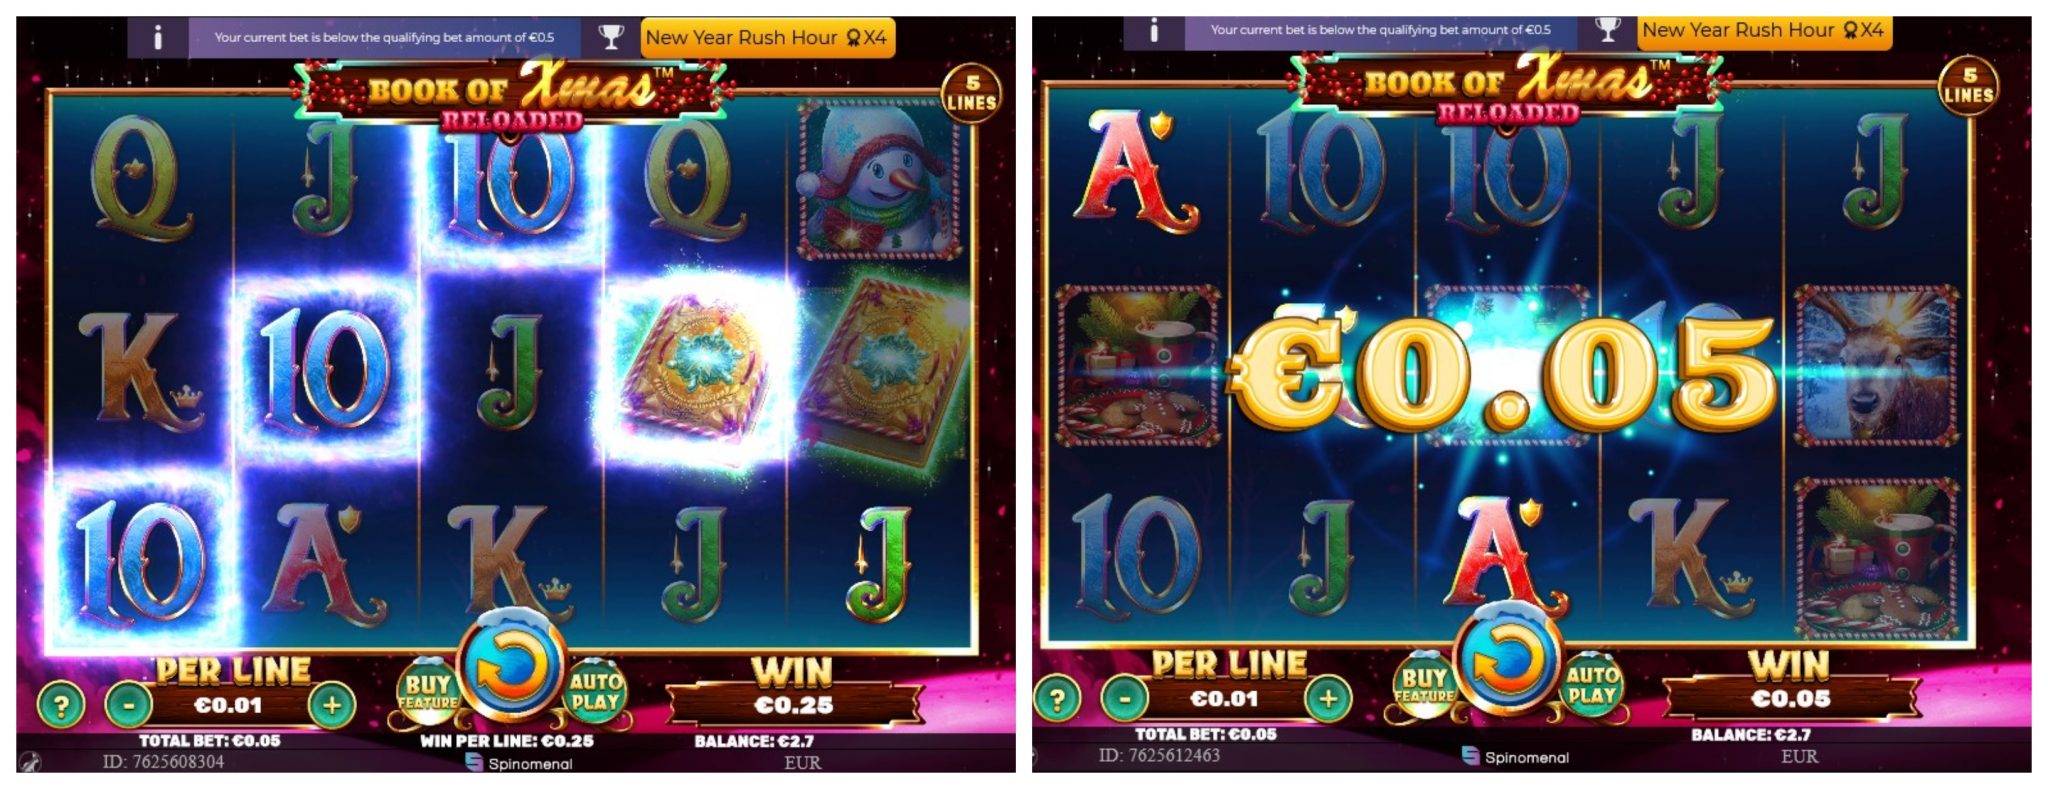 ggbet casino bonus code 2022